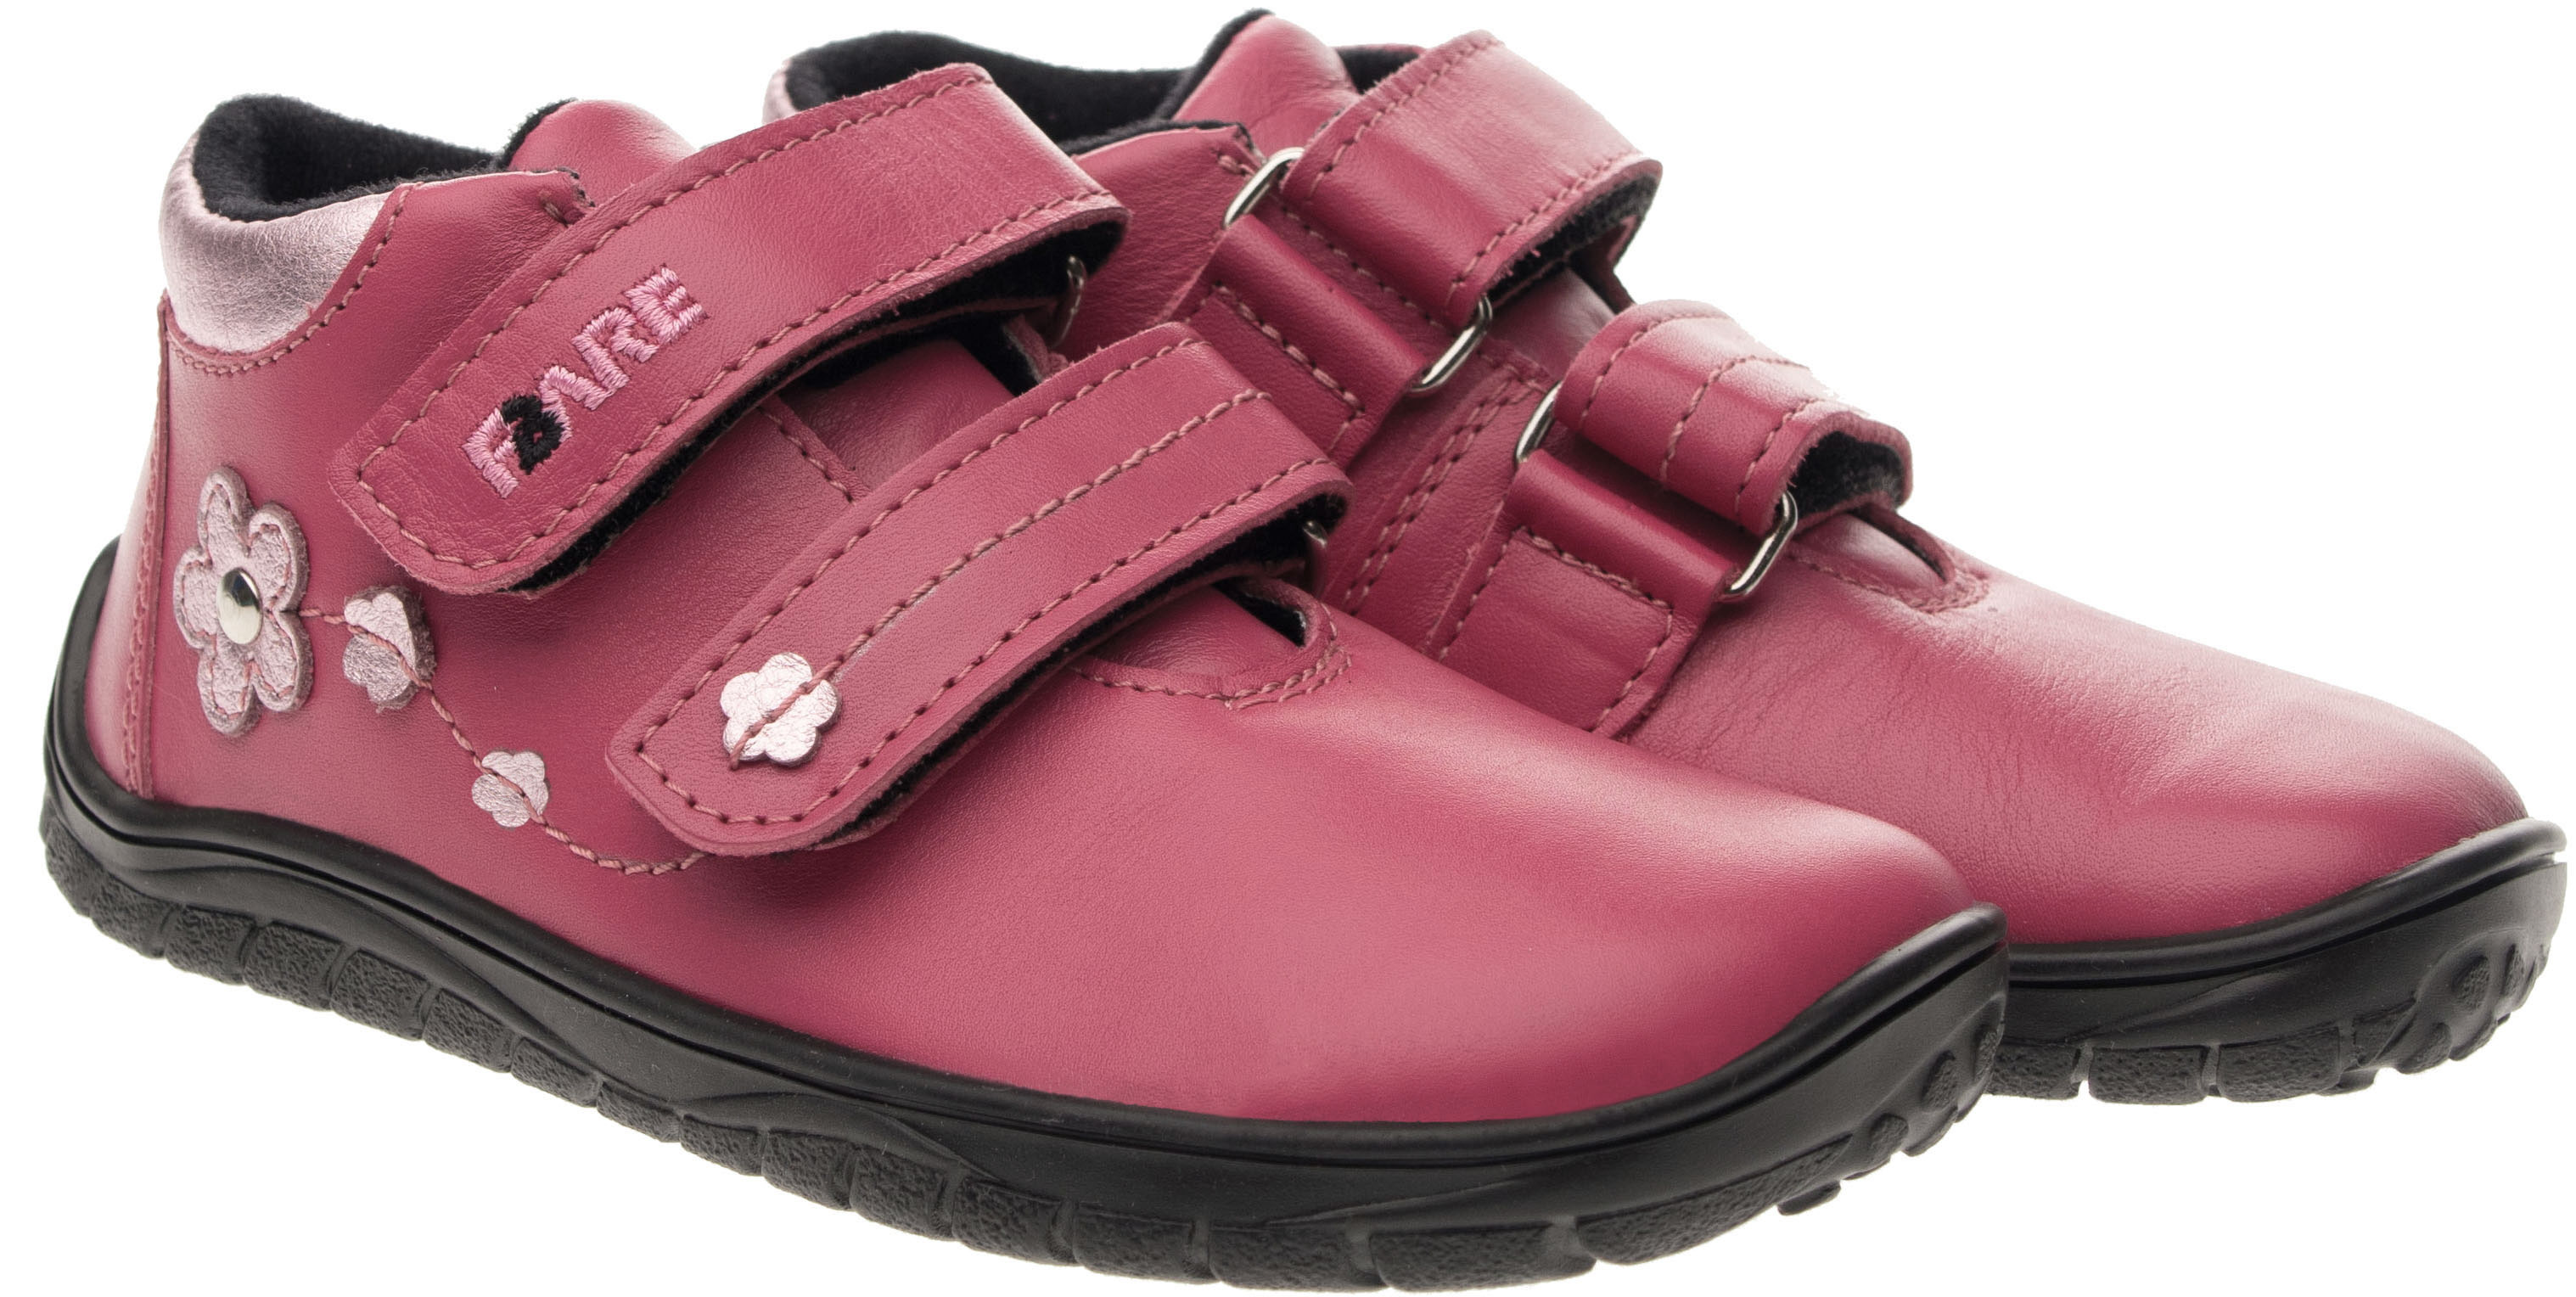 FARE BARE celoroční boty s membránou B5516152 Velikost obuvi: 29